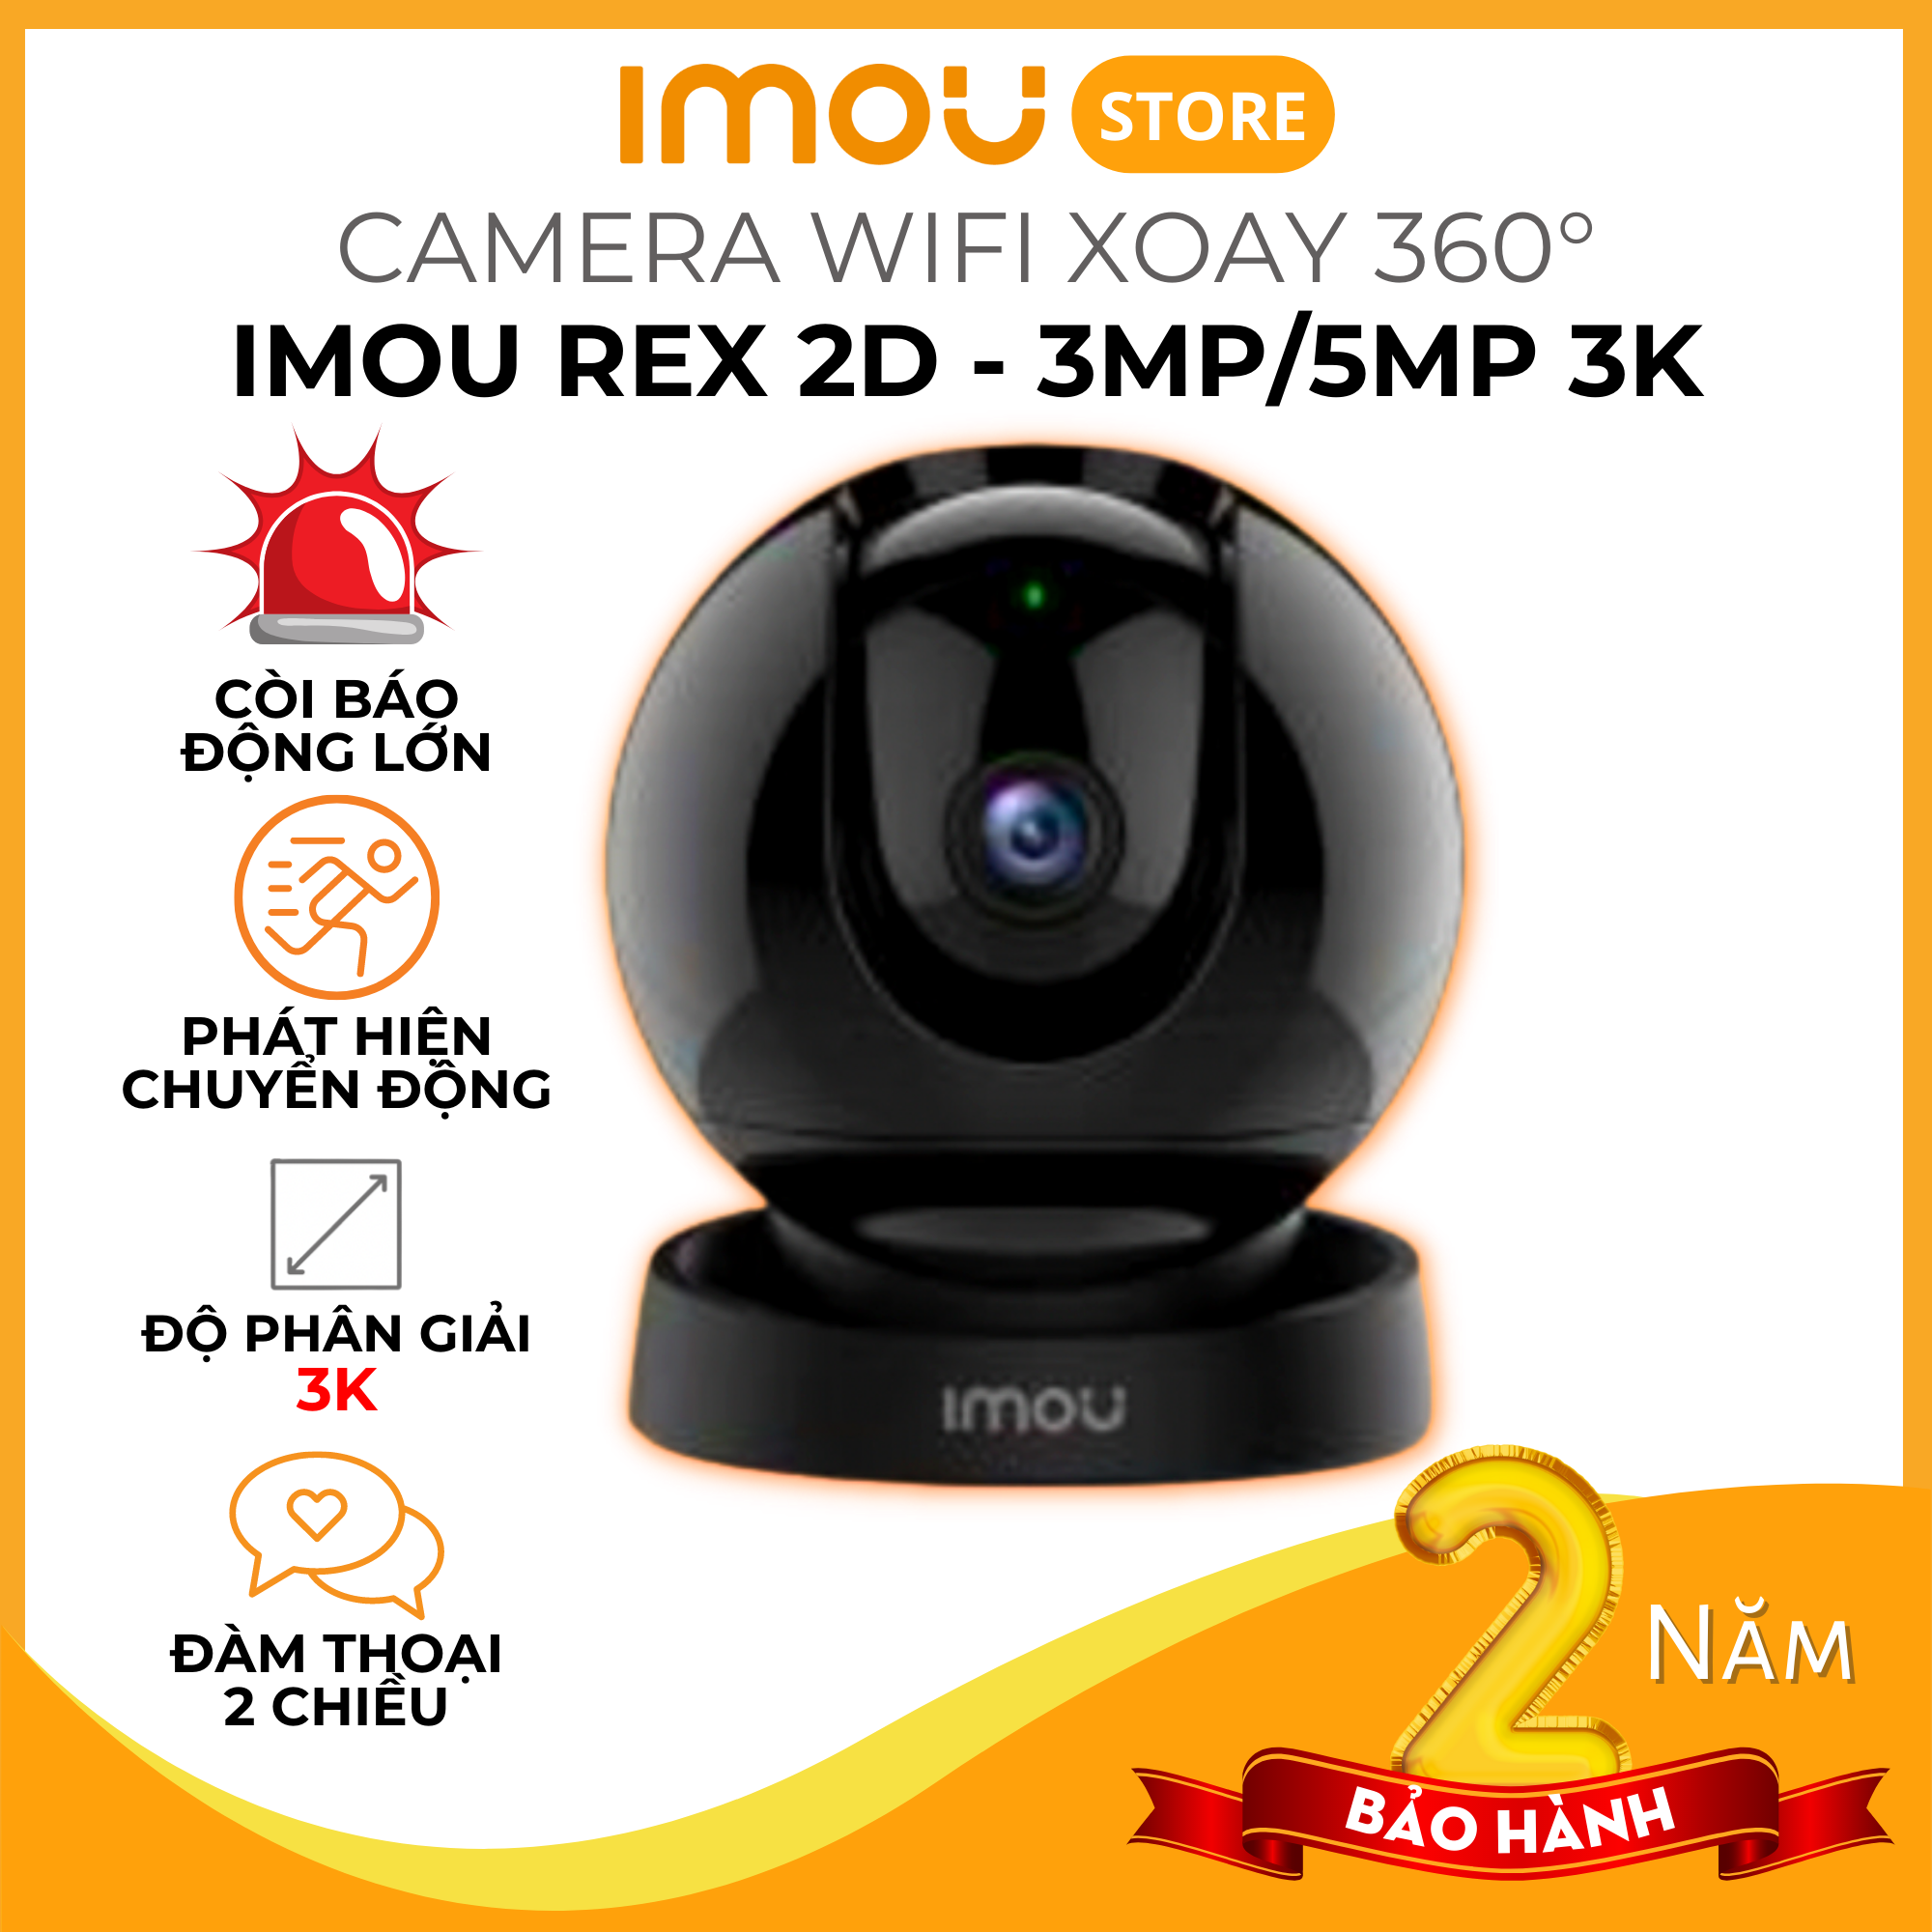 Camera Imou Rex 2D 3K 3MP/5MP - Camera quay quét 360 độ, AI phát hiện người, có còi và đèn báo, đàm thoại 2 chiều - Hàng chính hãng